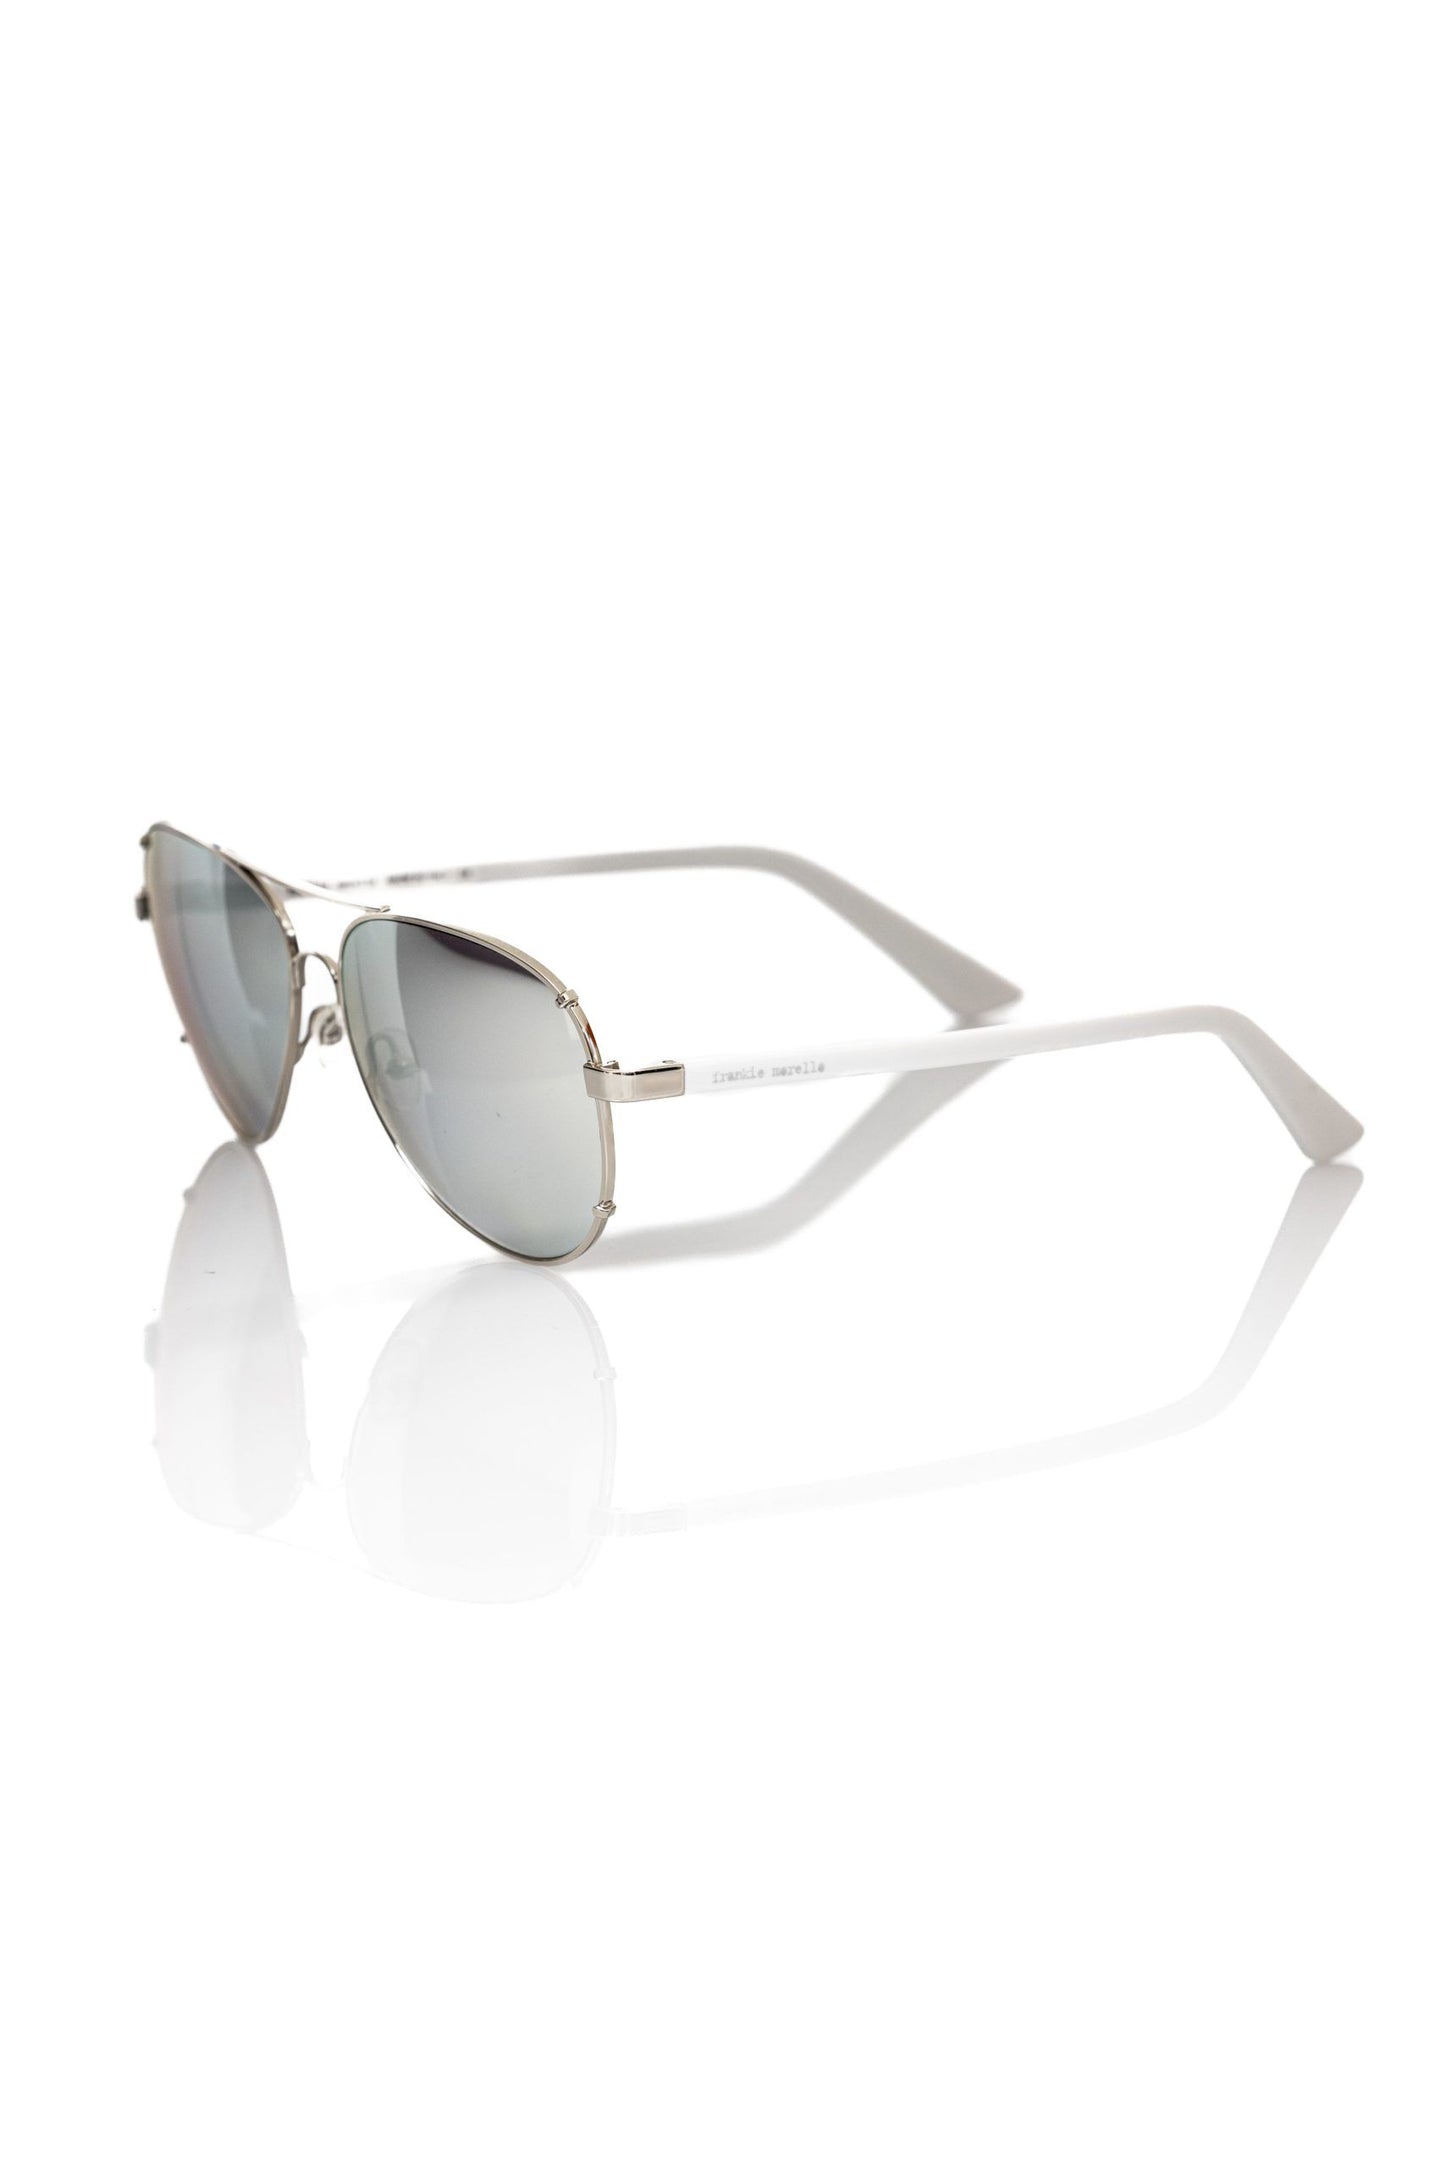 Frankie Morello Silver Metallic Fibre Sunglasses for man